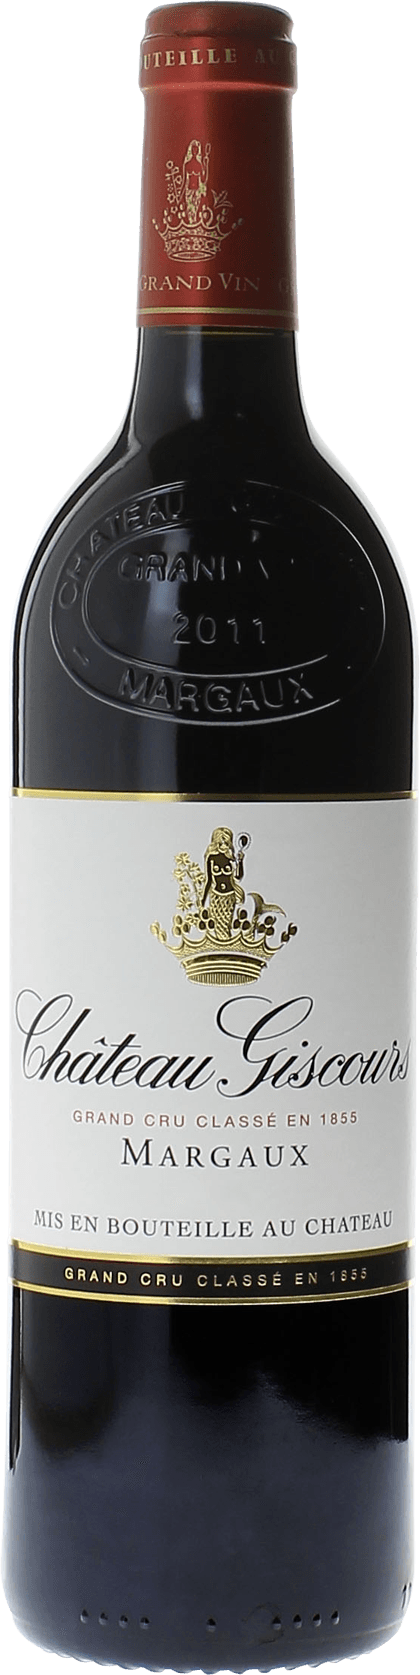 Giscours 1964 3me Grand cru class Margaux, Bordeaux rouge